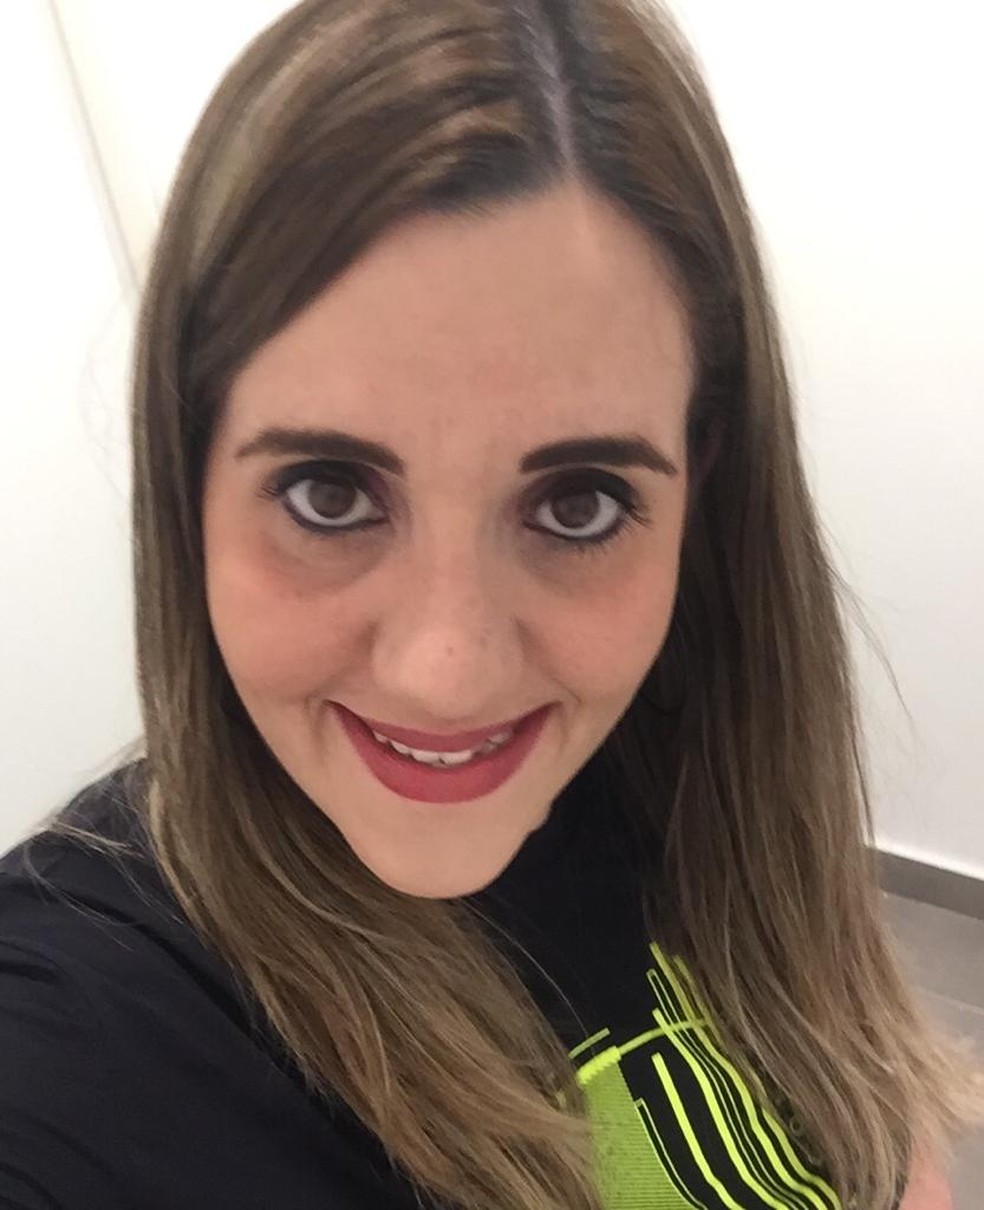 A analista financeira Priscila Nogueira está desde a semana passada tentando se cadastrar para conseguir o seguro-desemprego — Foto: Arquivo pessoal